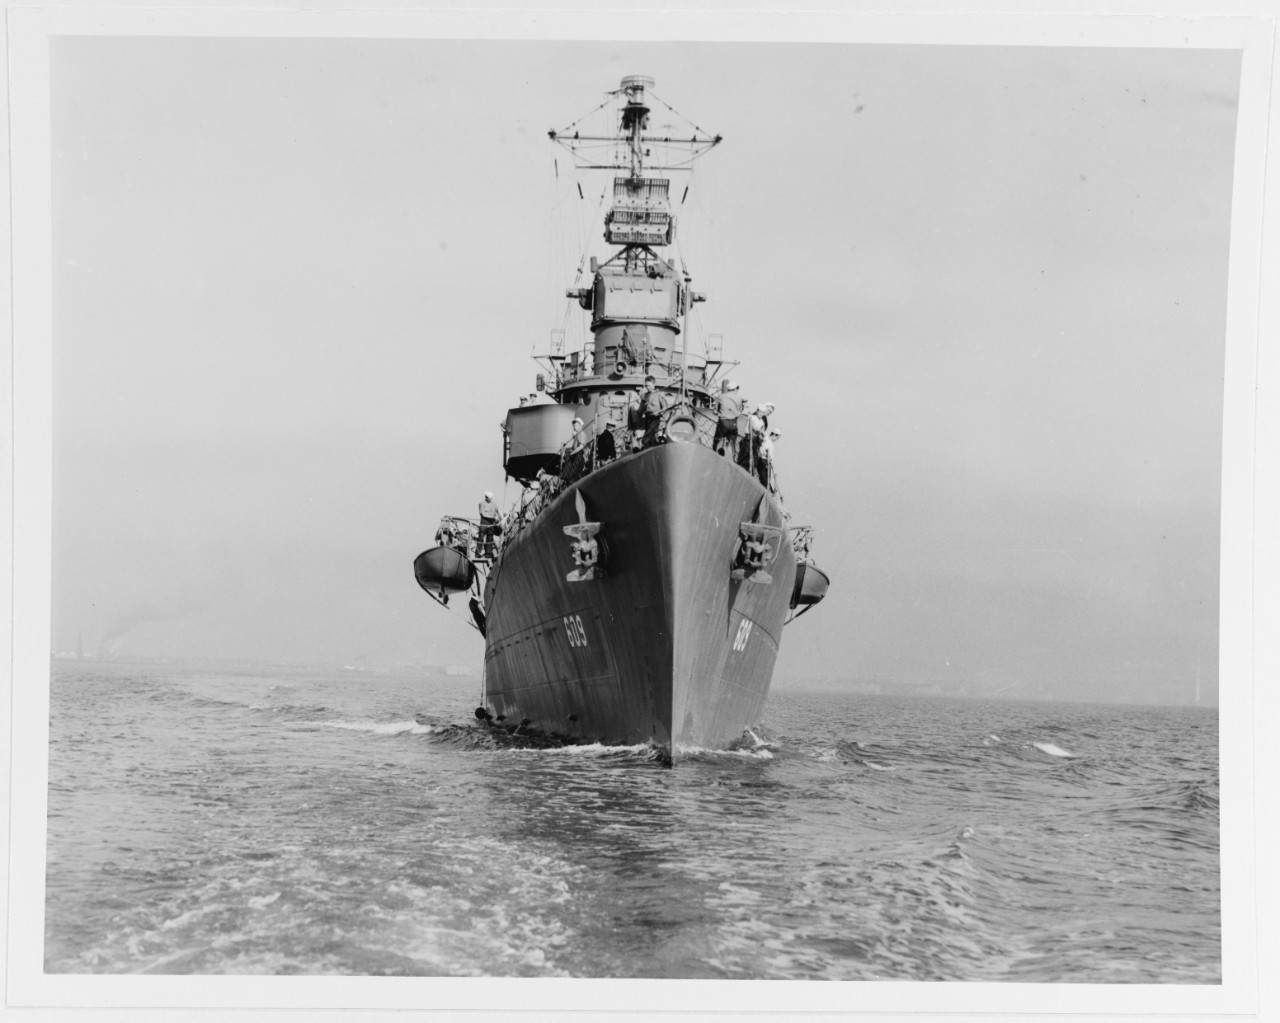 USS GILLESPIE (DD-609)